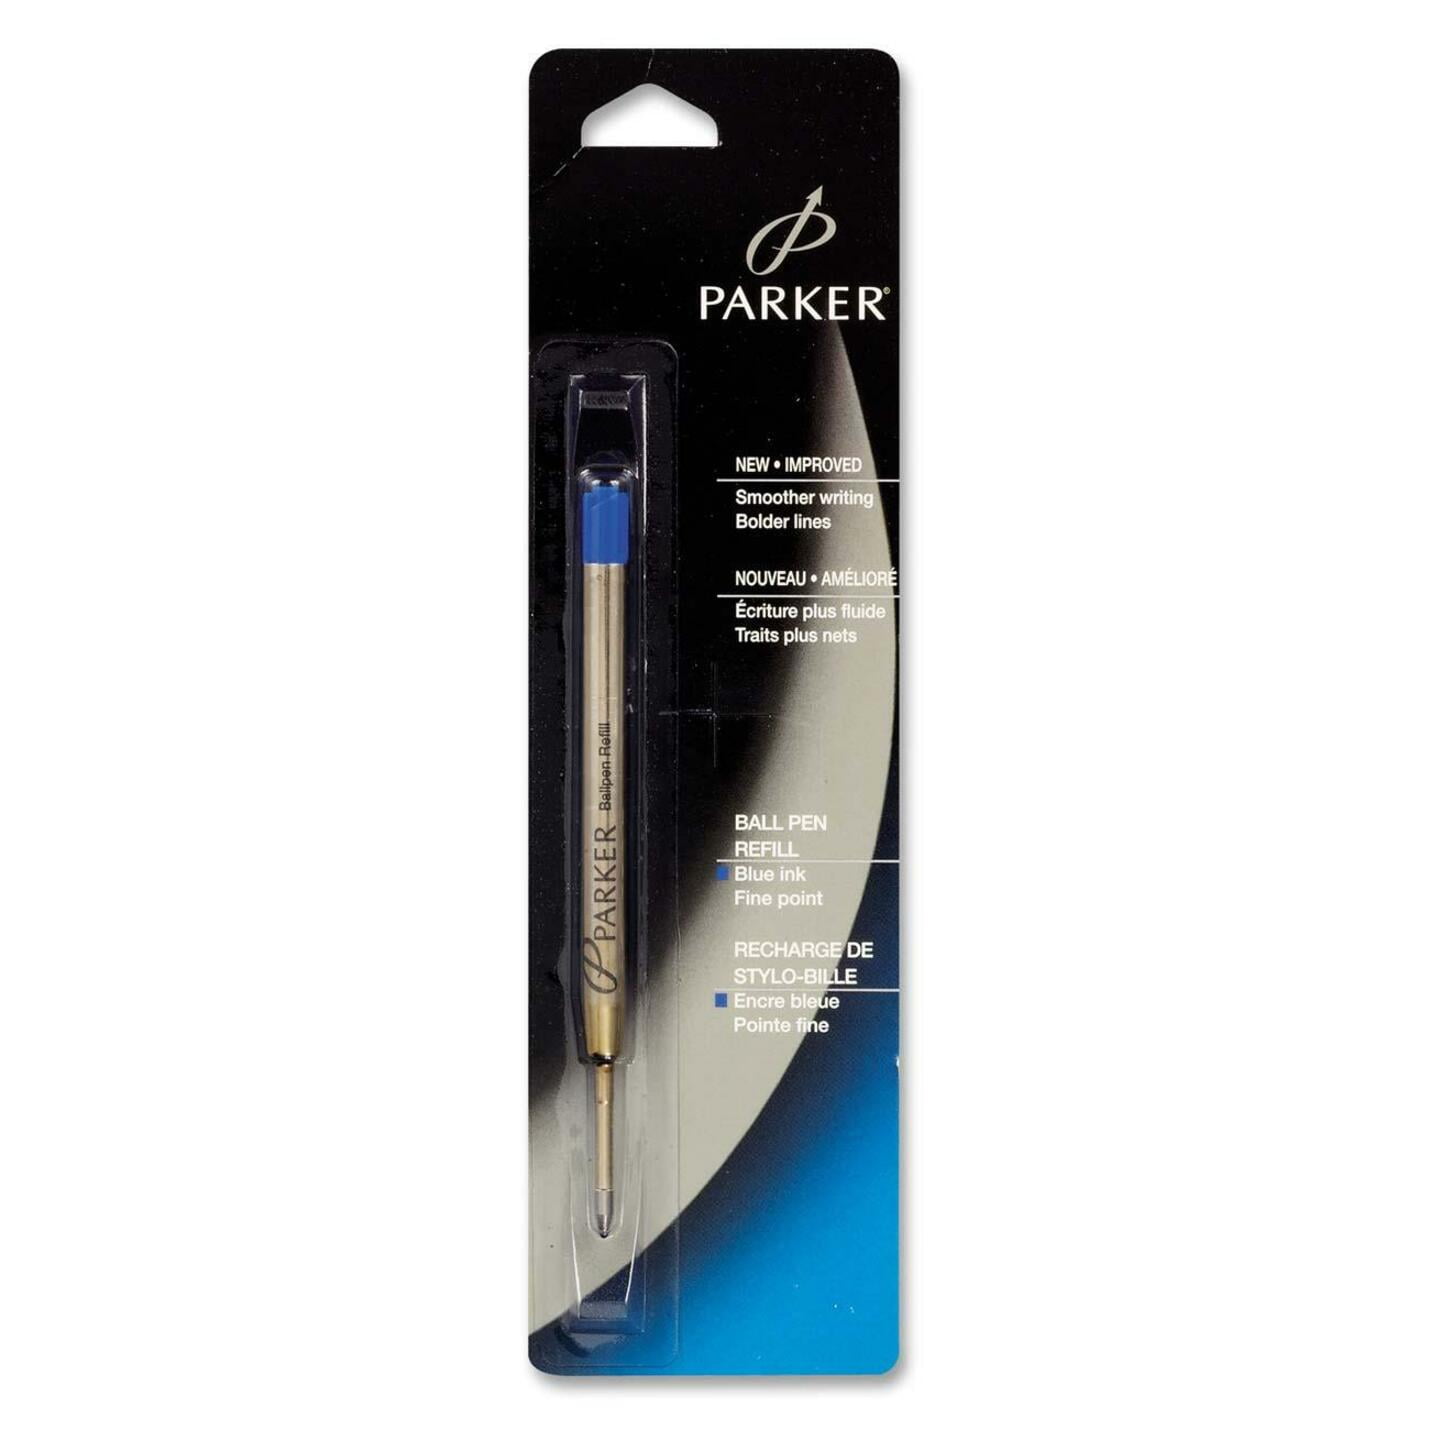 Parker Refill for Ballpoint Pens